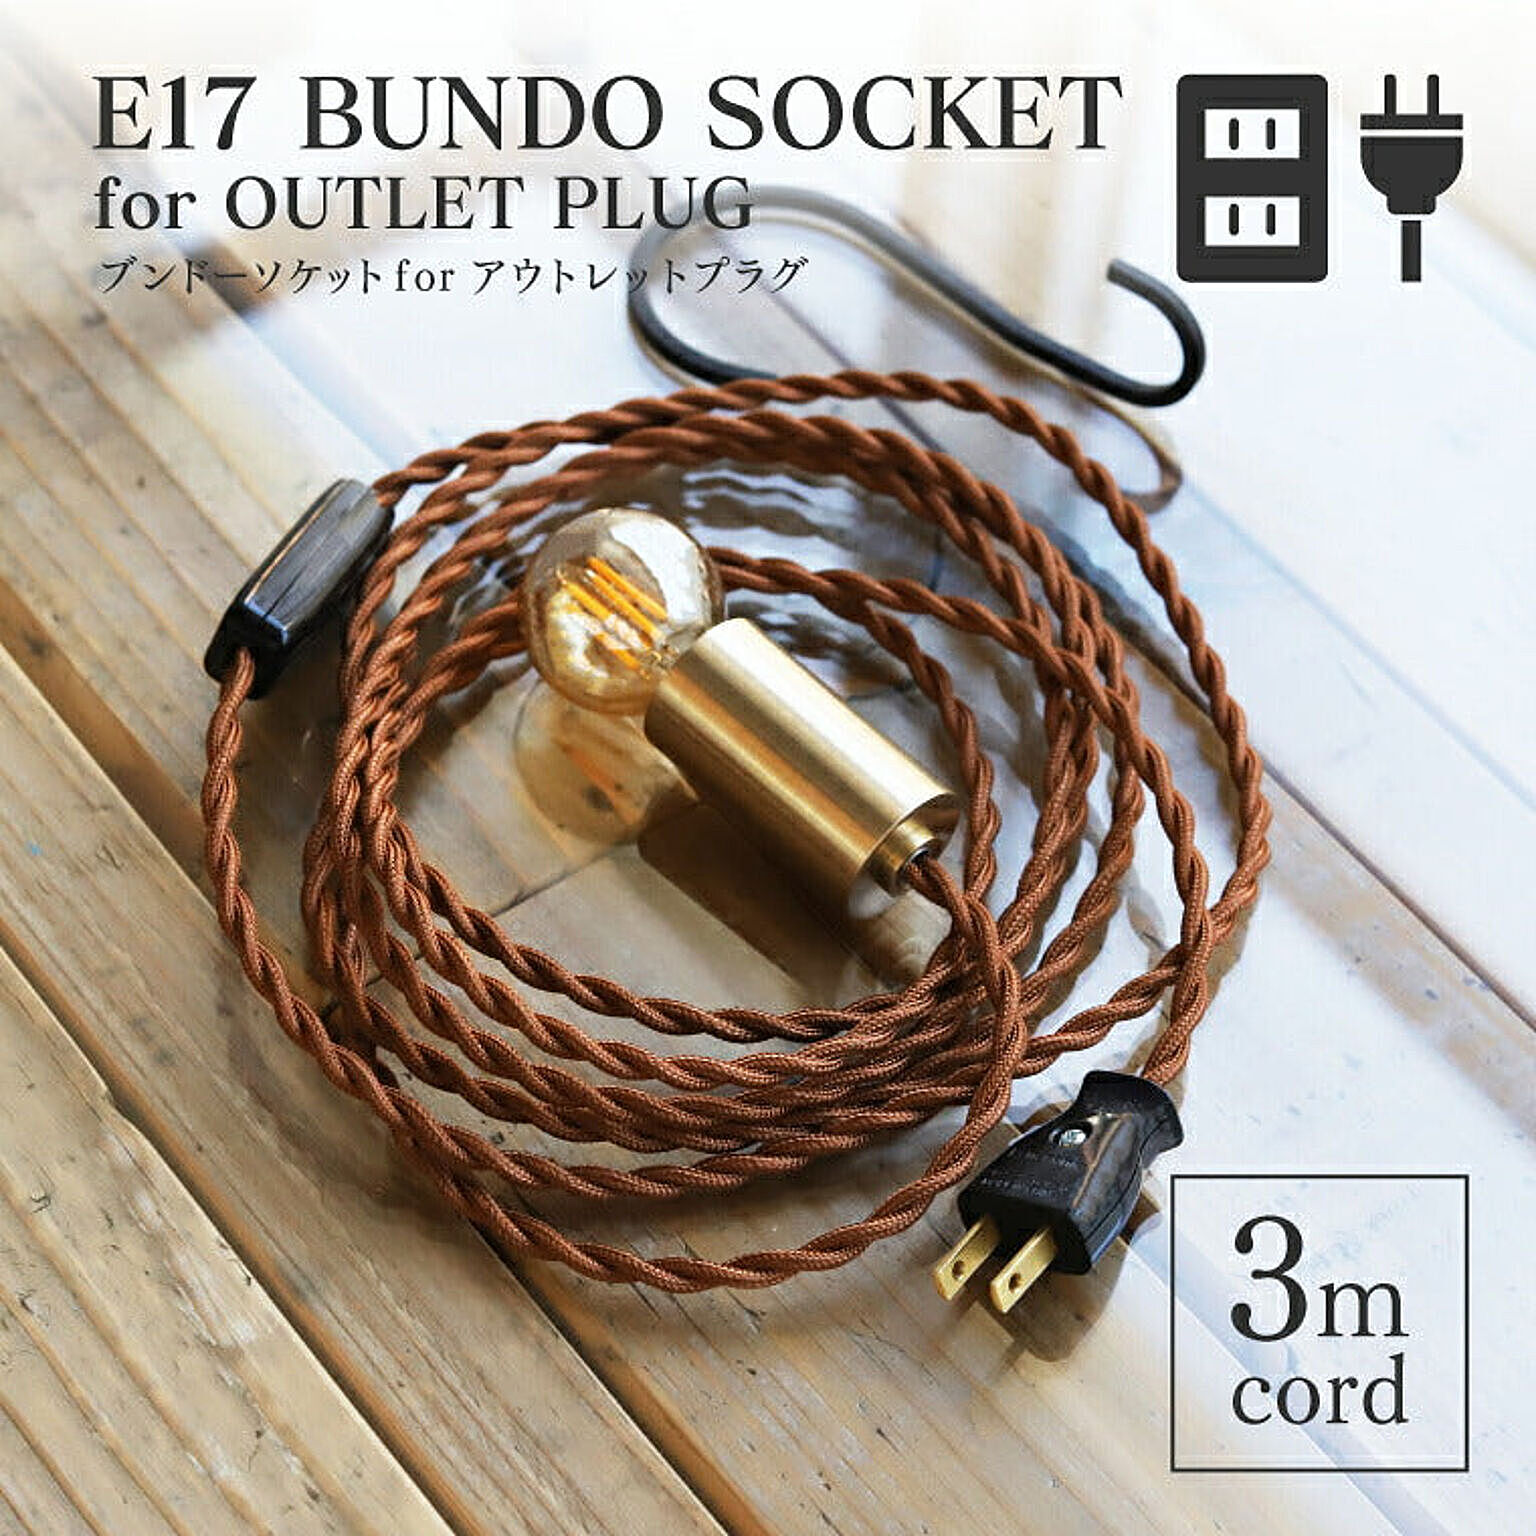 エジソン電球付 真鍮ペンダントライト ブンドーソケット コンセントプラグ E17/300cm